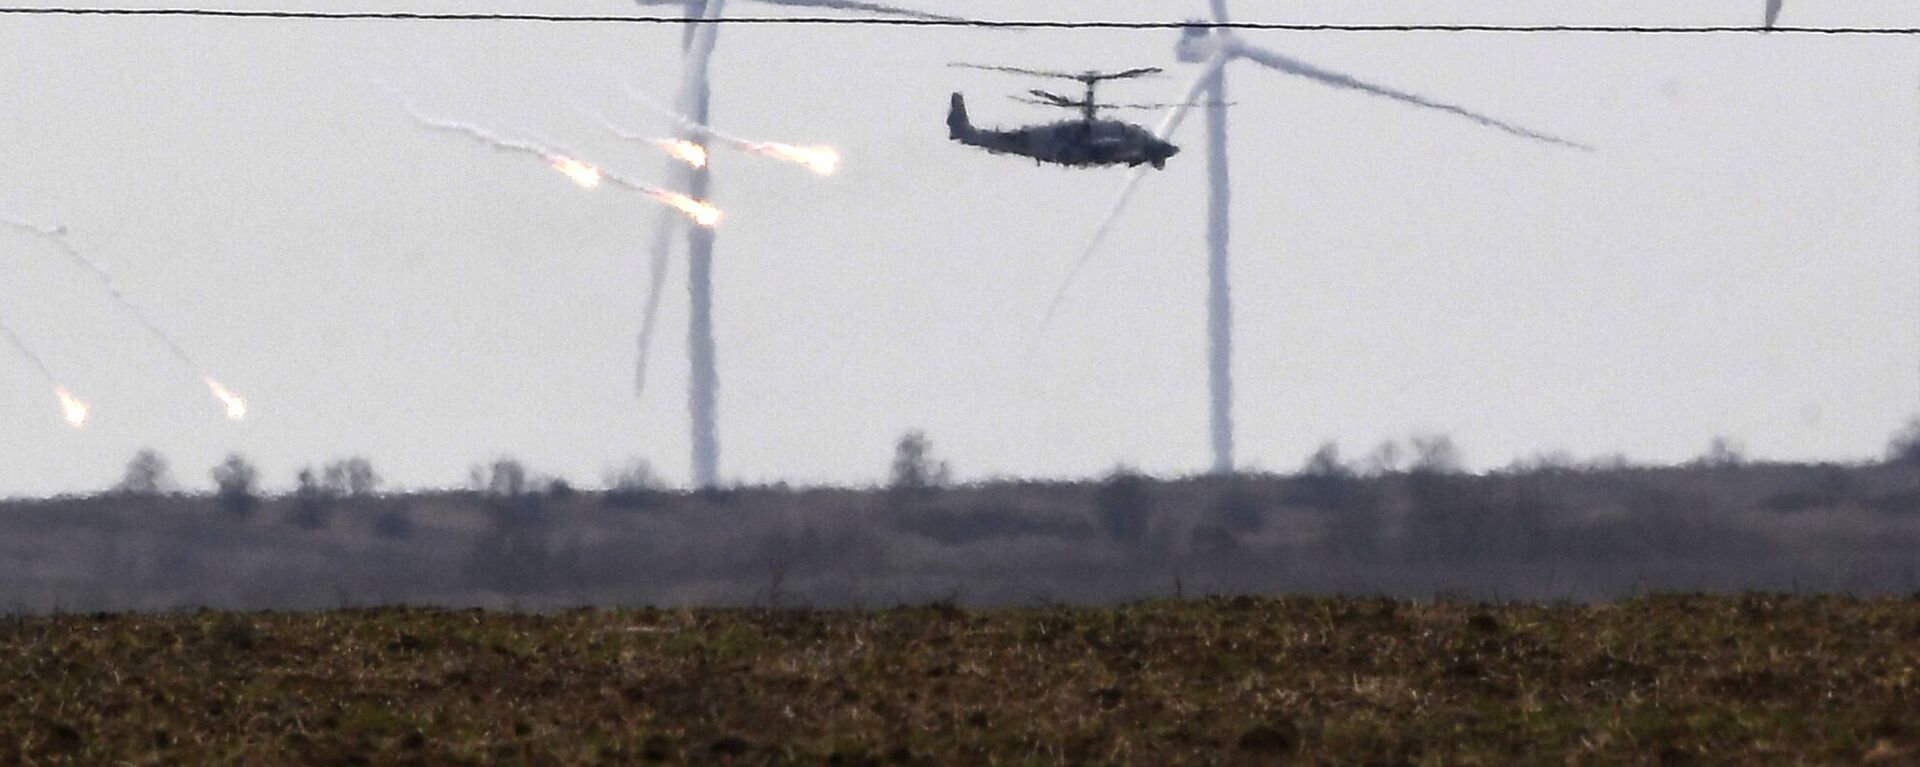 مروحيات هجومية من طراز مي-24 تابعة للقوات الجوية الروسية تحلق في سماء أرمينيا 28 فبراير 2022 - سبوتنيك عربي, 1920, 07.10.2022